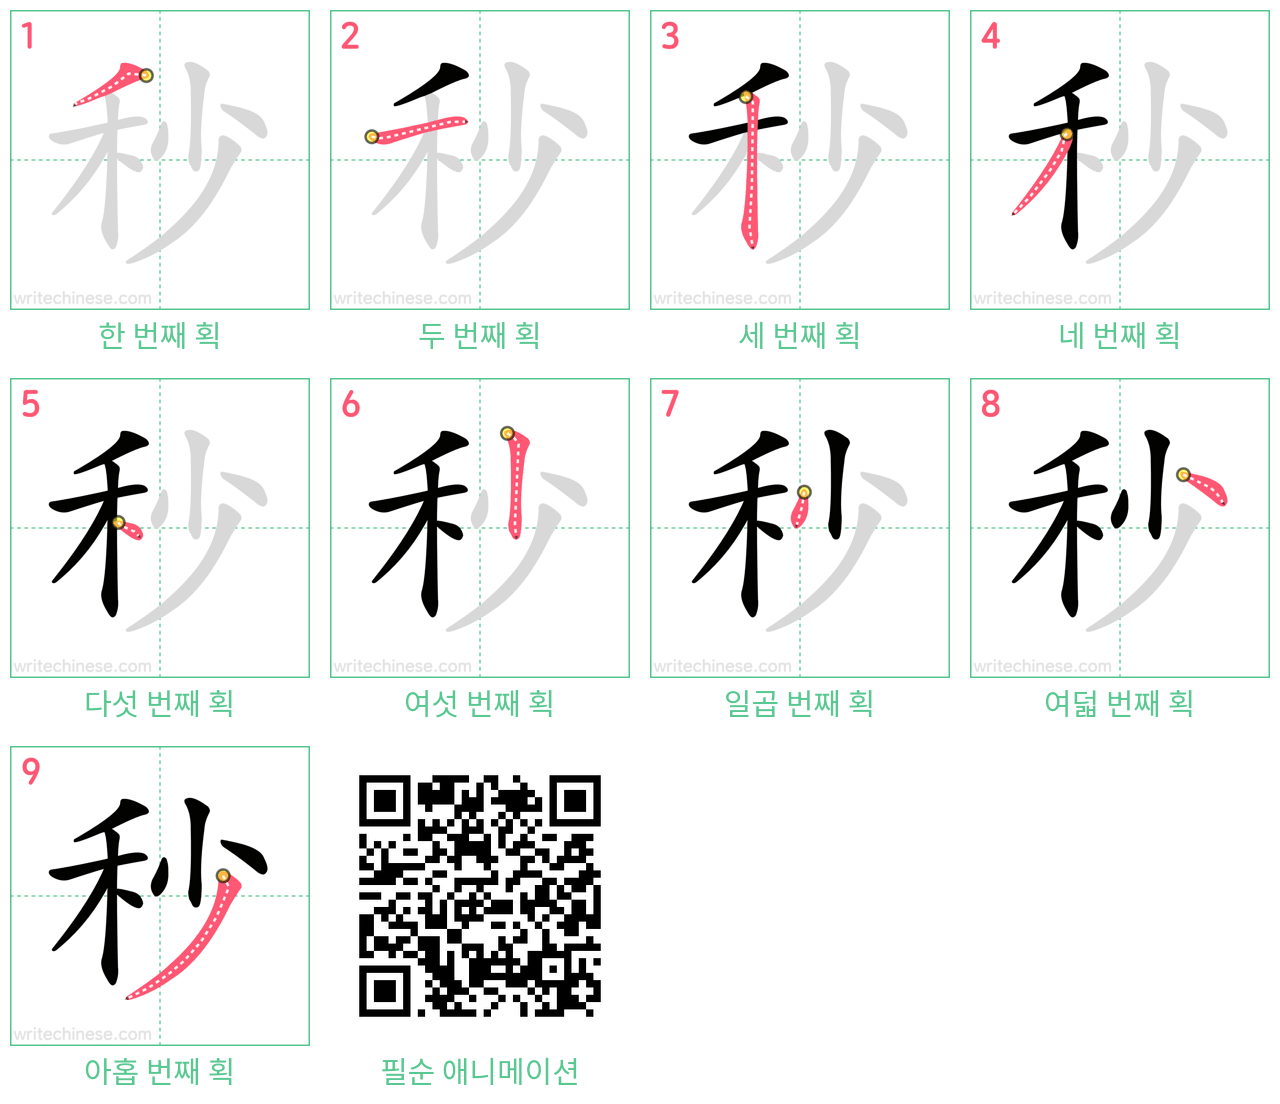 秒 step-by-step stroke order diagrams